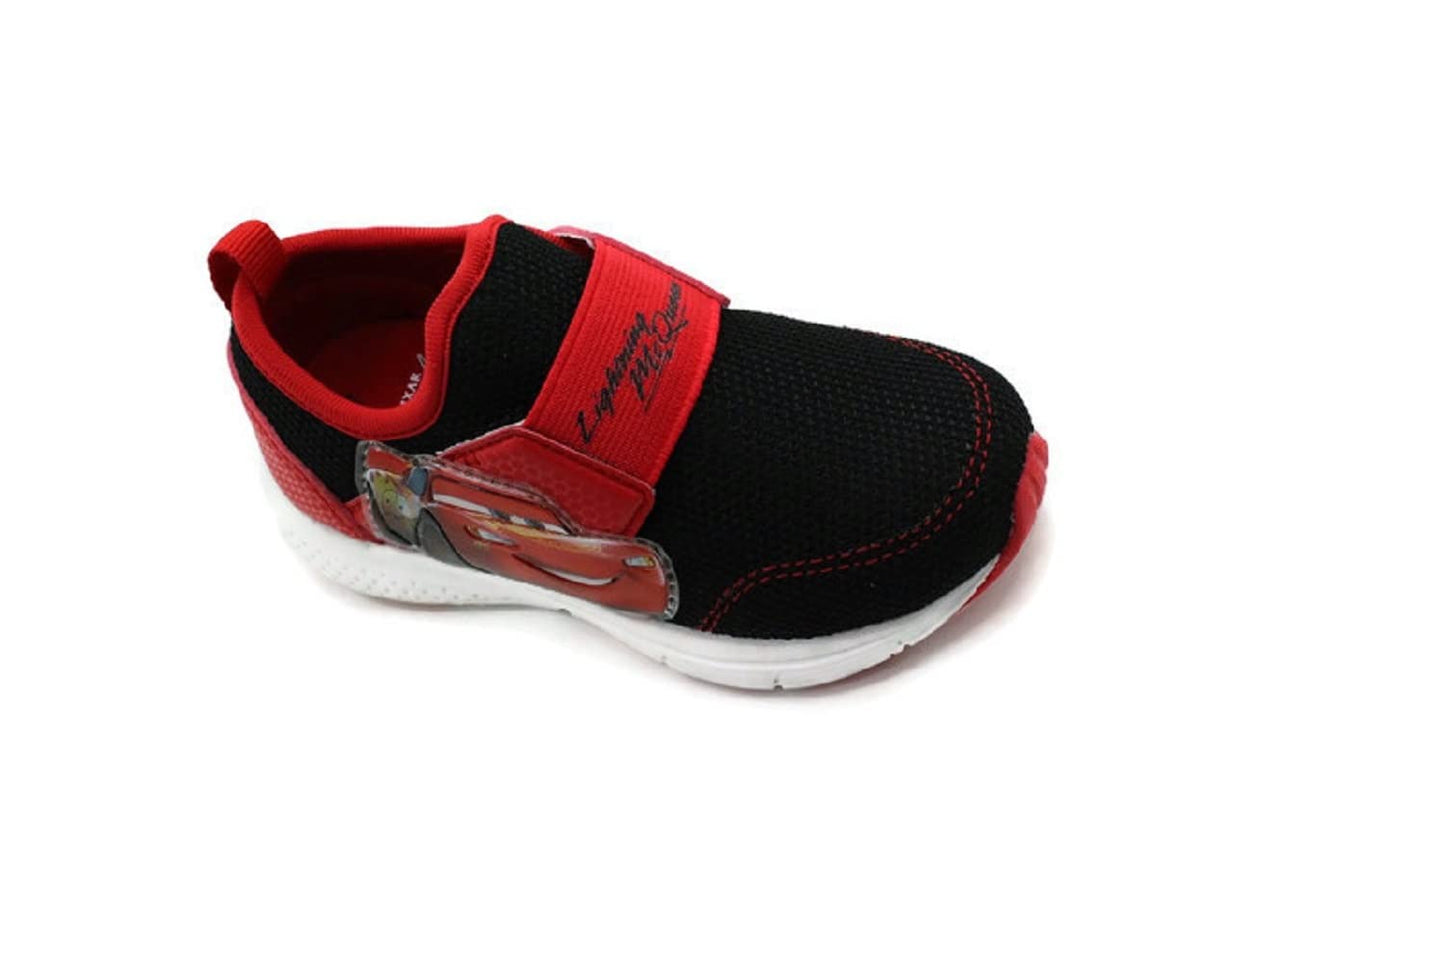 Disney Pixar Cars Lightning McQueen Boy's Lighted Athletic Sneaker, Black/Red (Toddler/Little Kid)